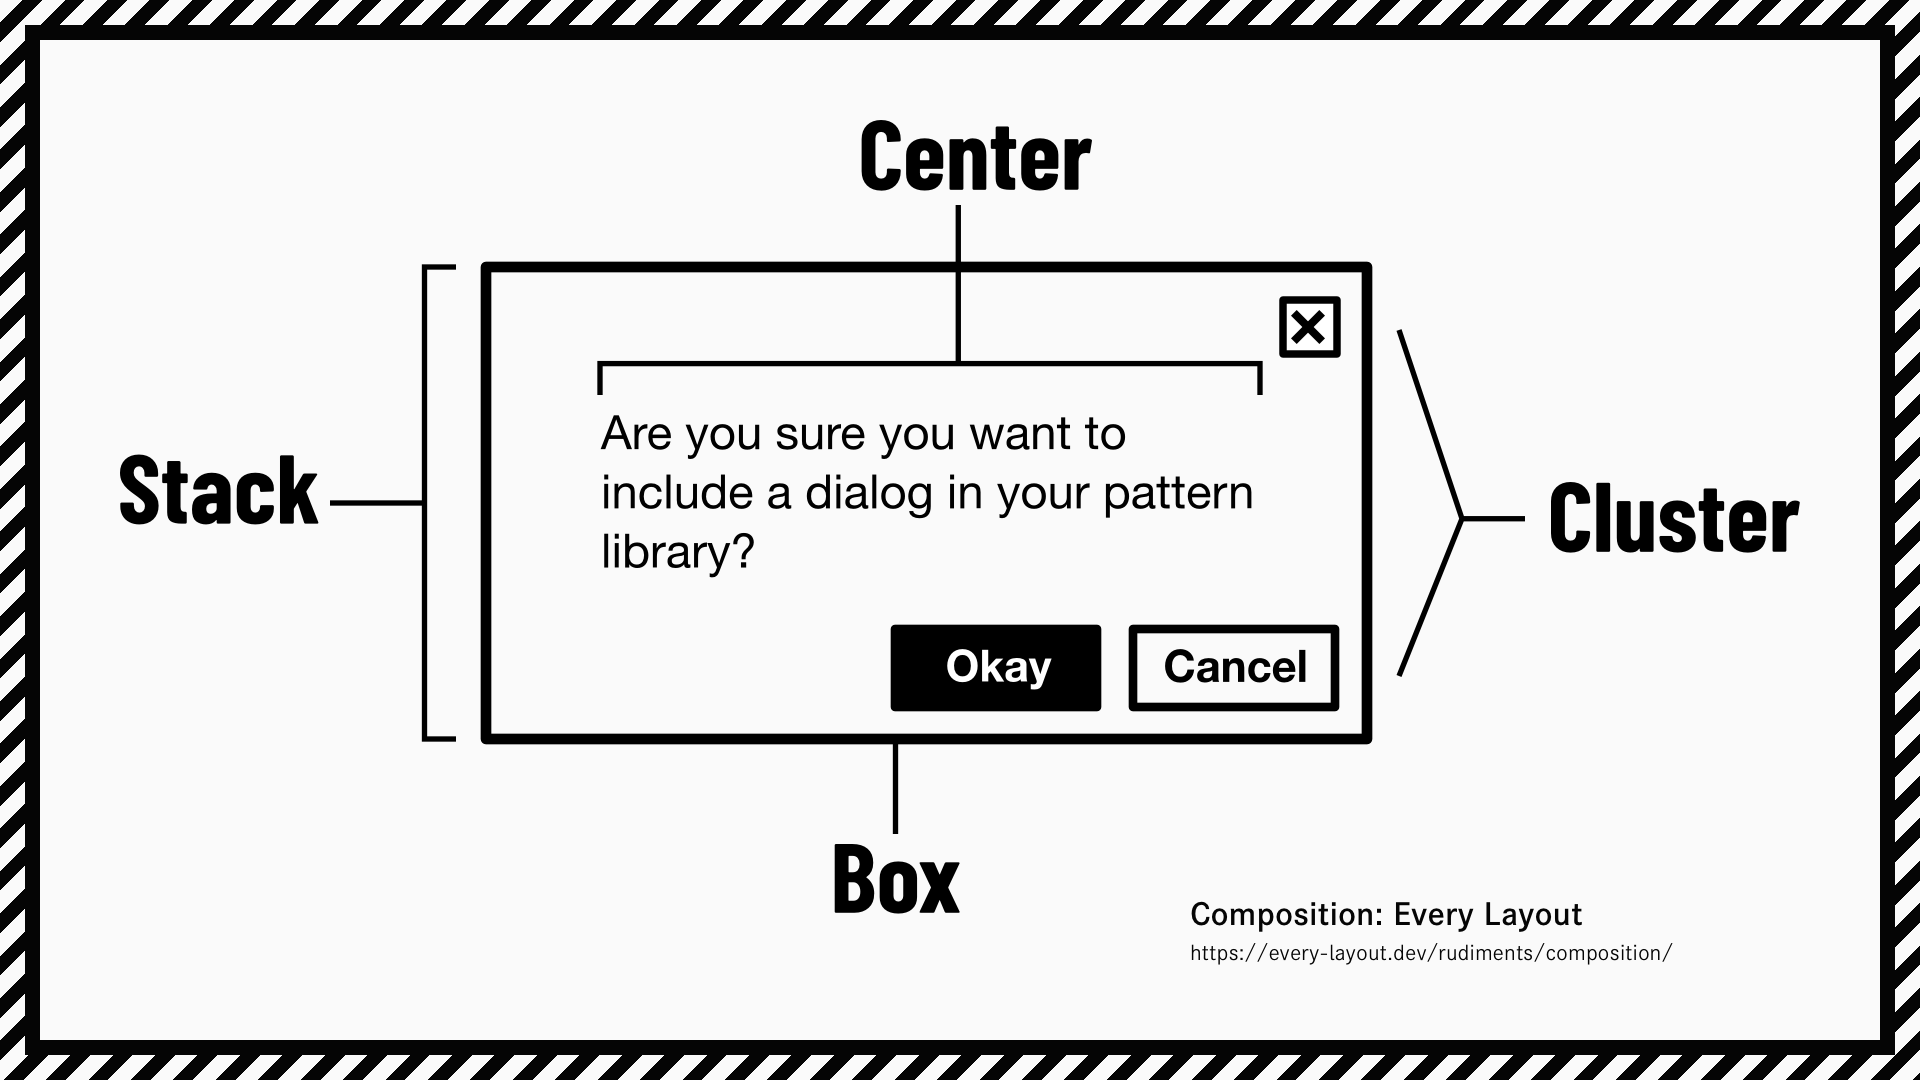 アラートダイアログは「Box」というレイアウトプリミティブがもっとも外側にあり、その内側に「Stack」があり、「Stack」の中のメッセージは「Center」、ボタンのレイアウトには「Cluster」が使われている。